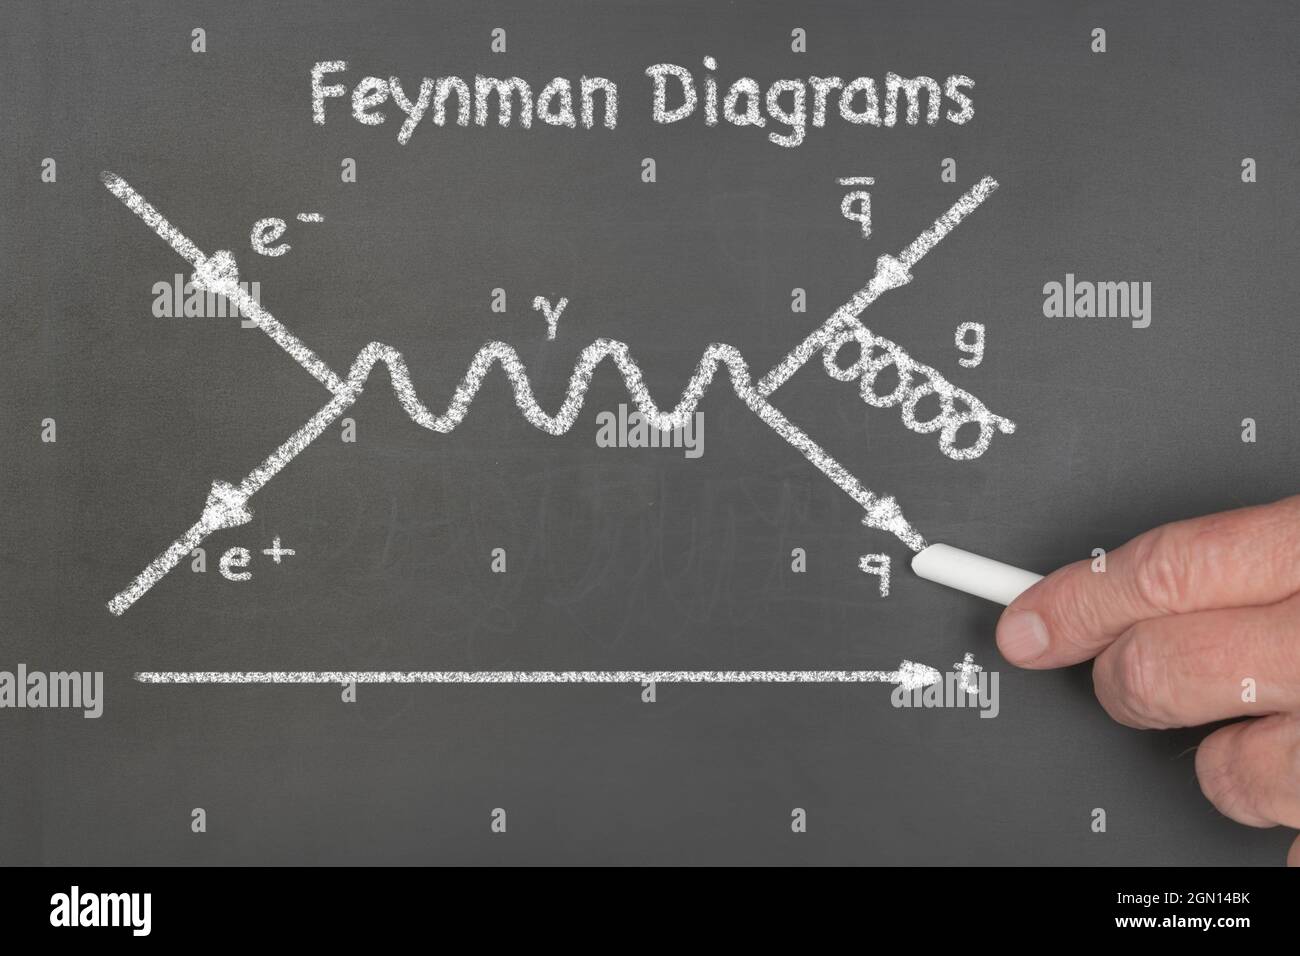 Un insegnante spiega agli studenti il diagramma di Feynman, un'equazione fisica teorica che descrive il comportamento e l'interazione delle particelle subatomiche. Foto Stock